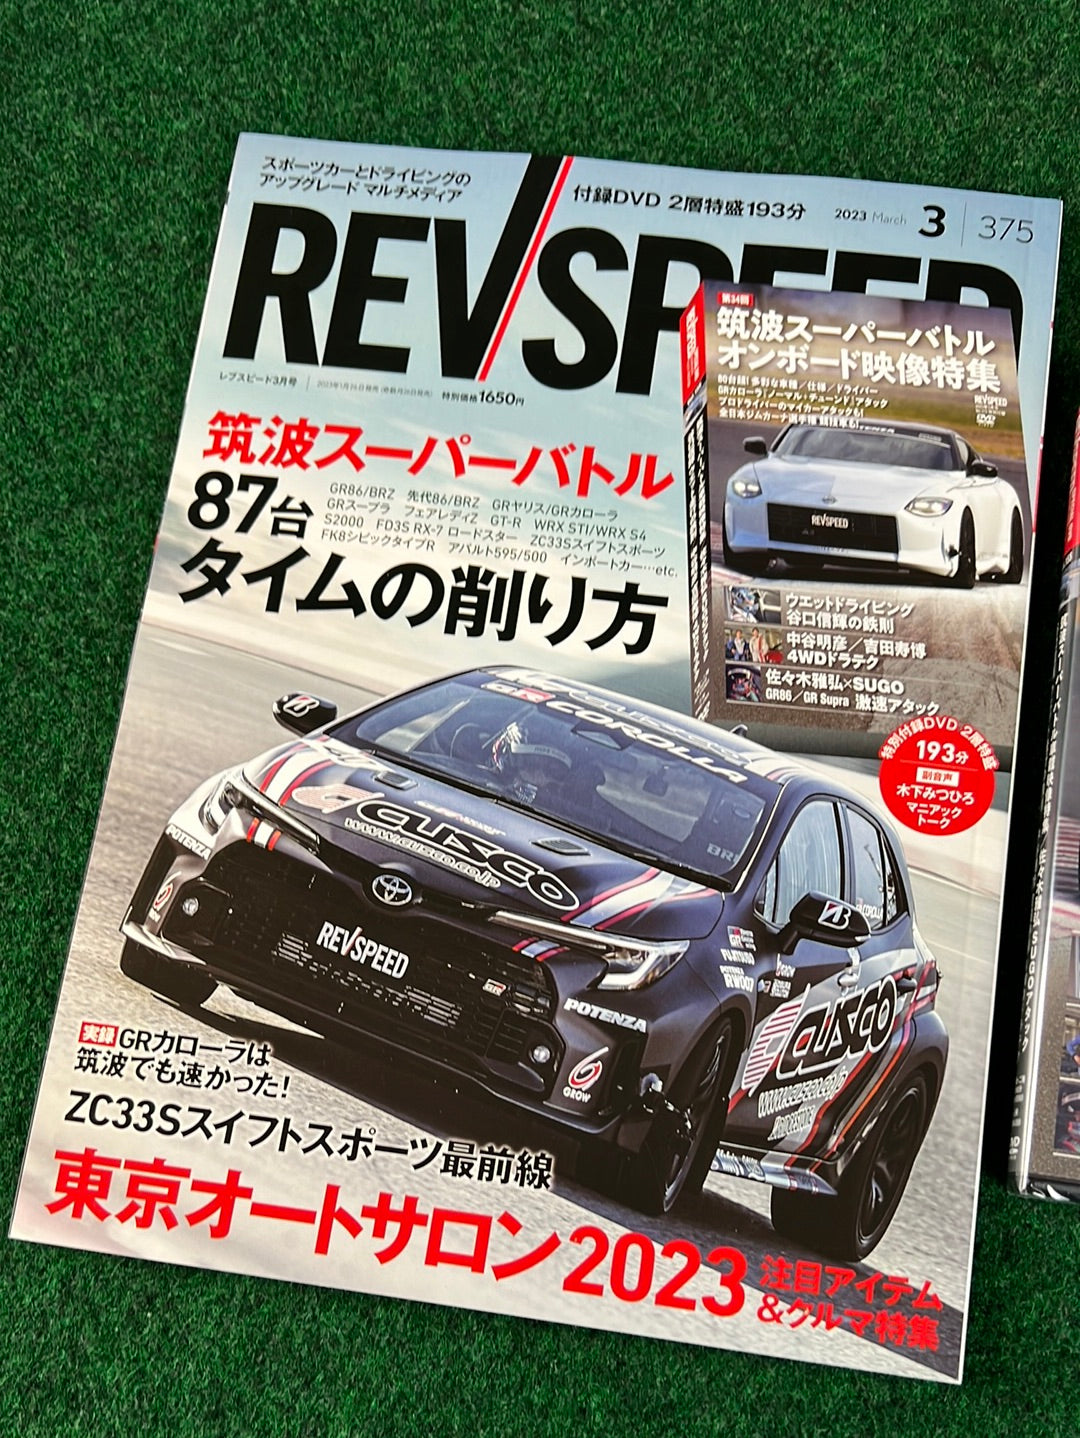 REVSPEED Magazine & DVD - March 2023